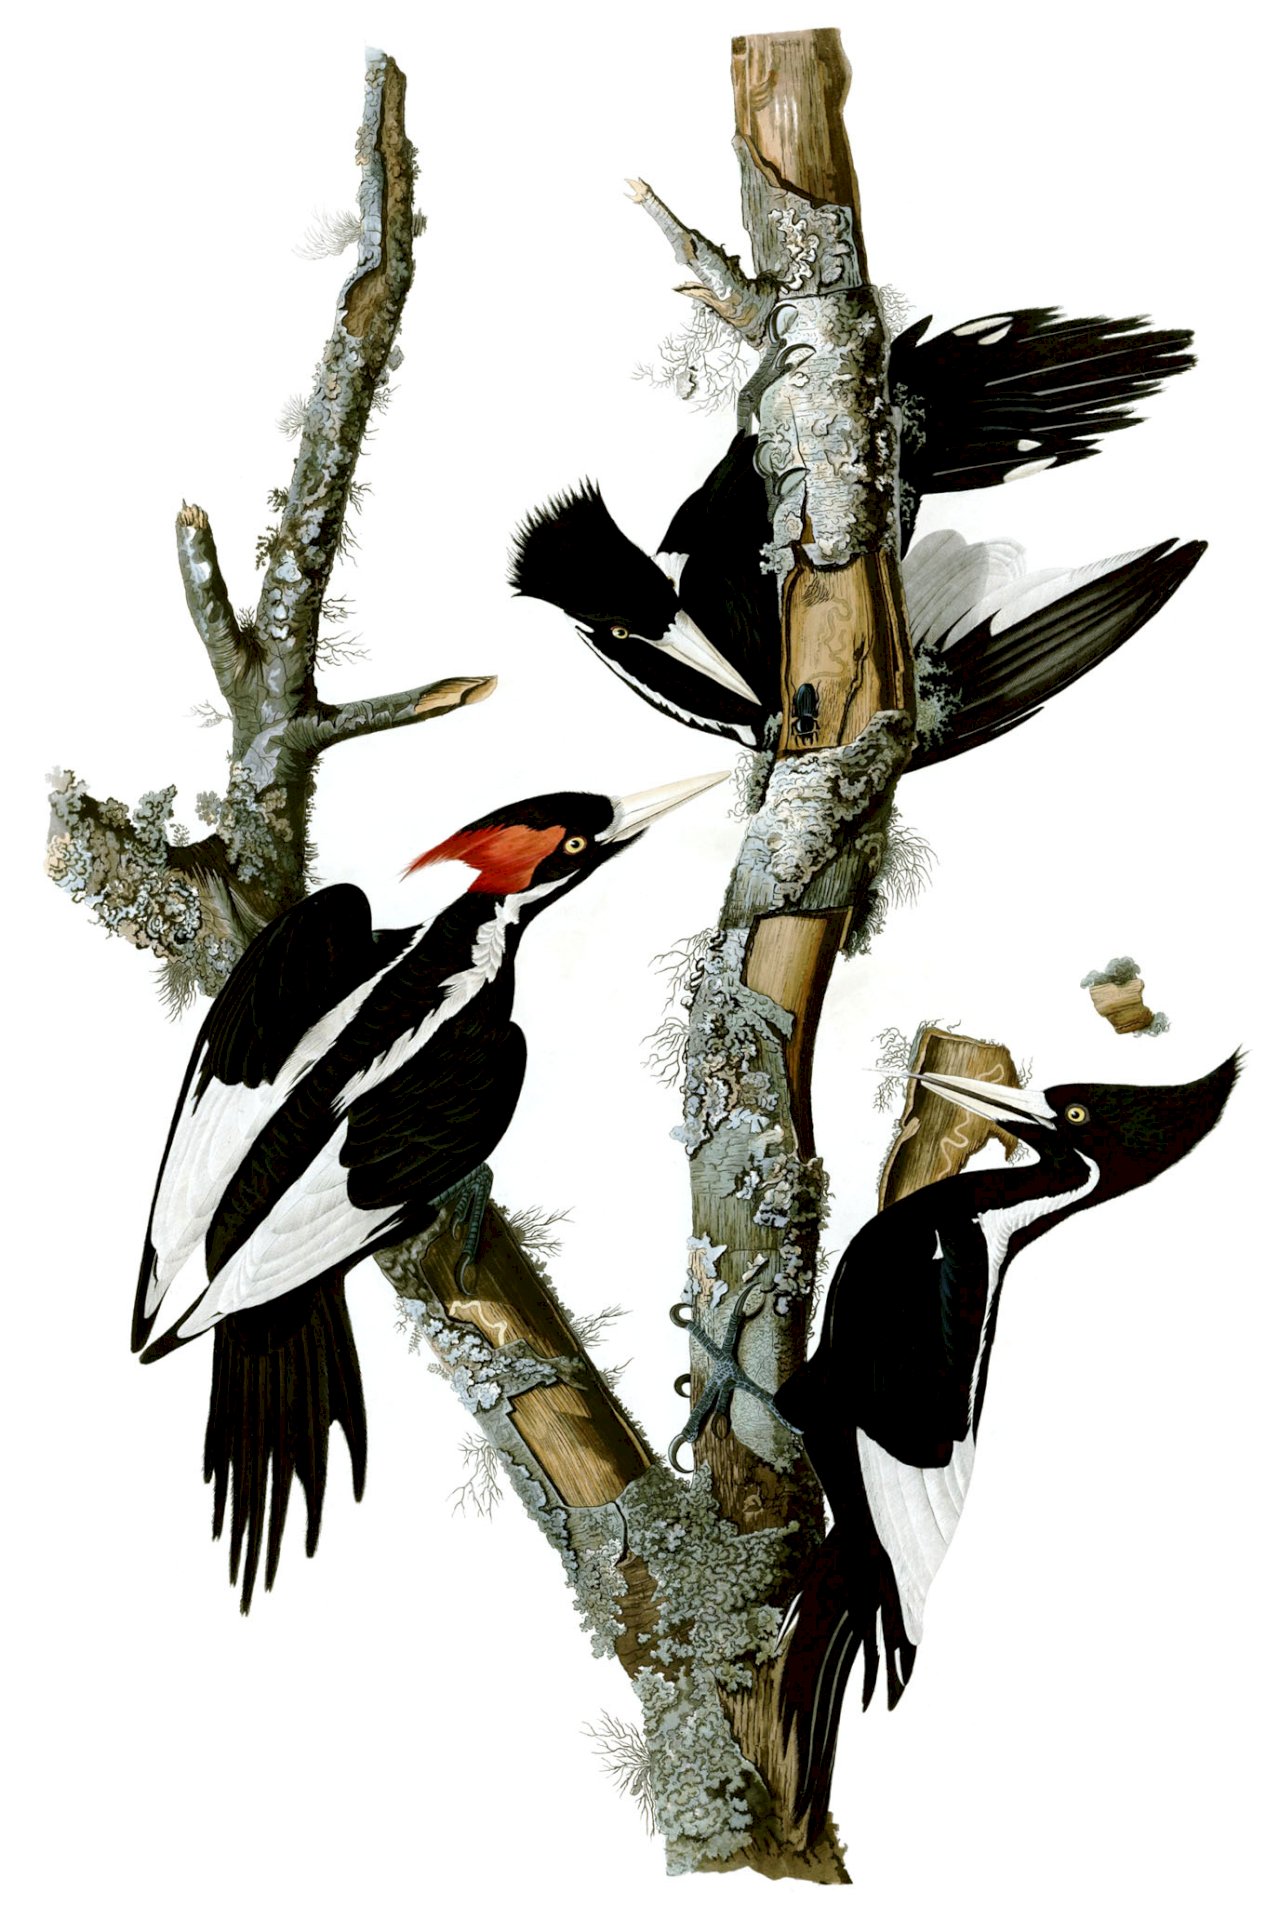 象牙喙啄木鳥在內共23物種 美國將宣布滅絕